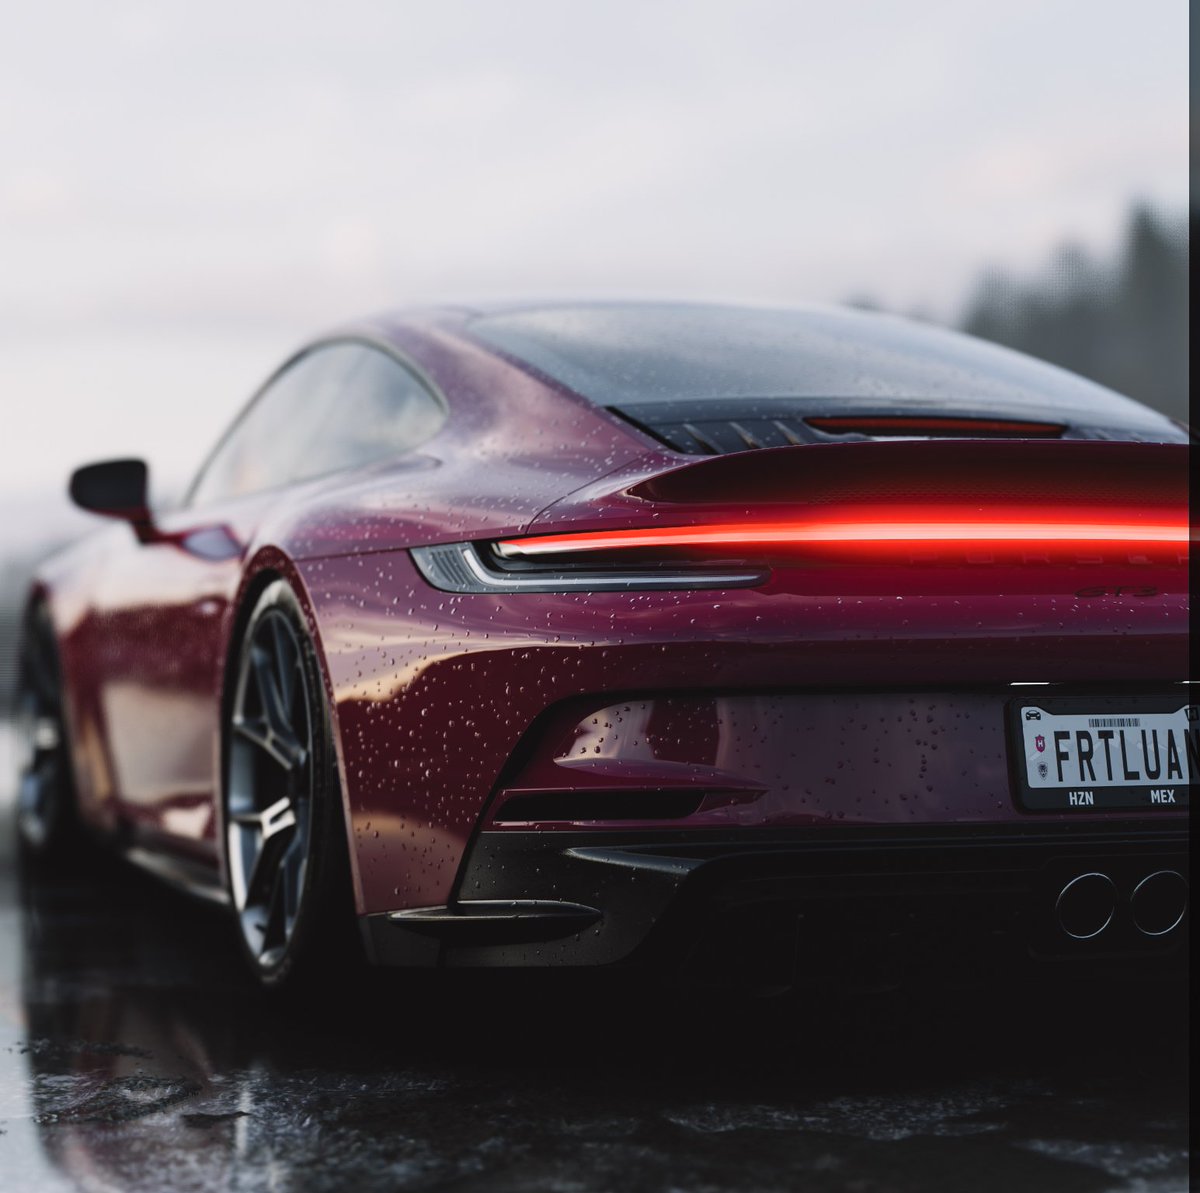 911 GT3 Touring 
————————
@ForzaHorizon @Porsche #porsche #ForzaHorizon5 #VirtualPhotography #VGPUnite #TheCapturedCollective #GSVP #VPRT #ThePhotoMode #PhotoMode #photography #Xbox